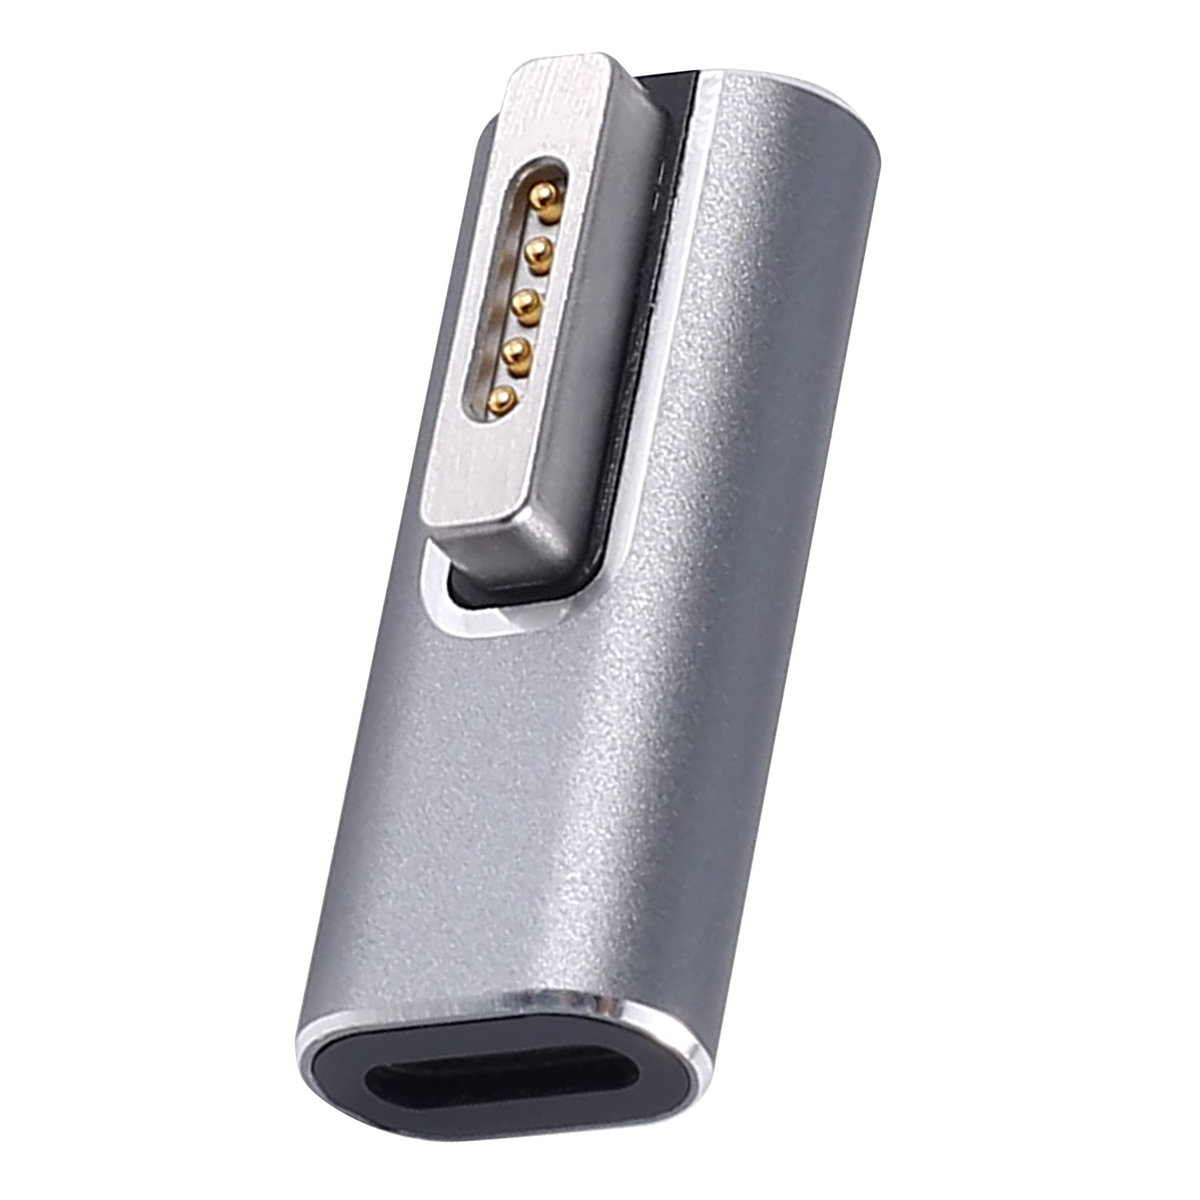 Przejściówka do MacBooka MagSafe 2 do zasilania z USB-C, kompaktowa, srebrna